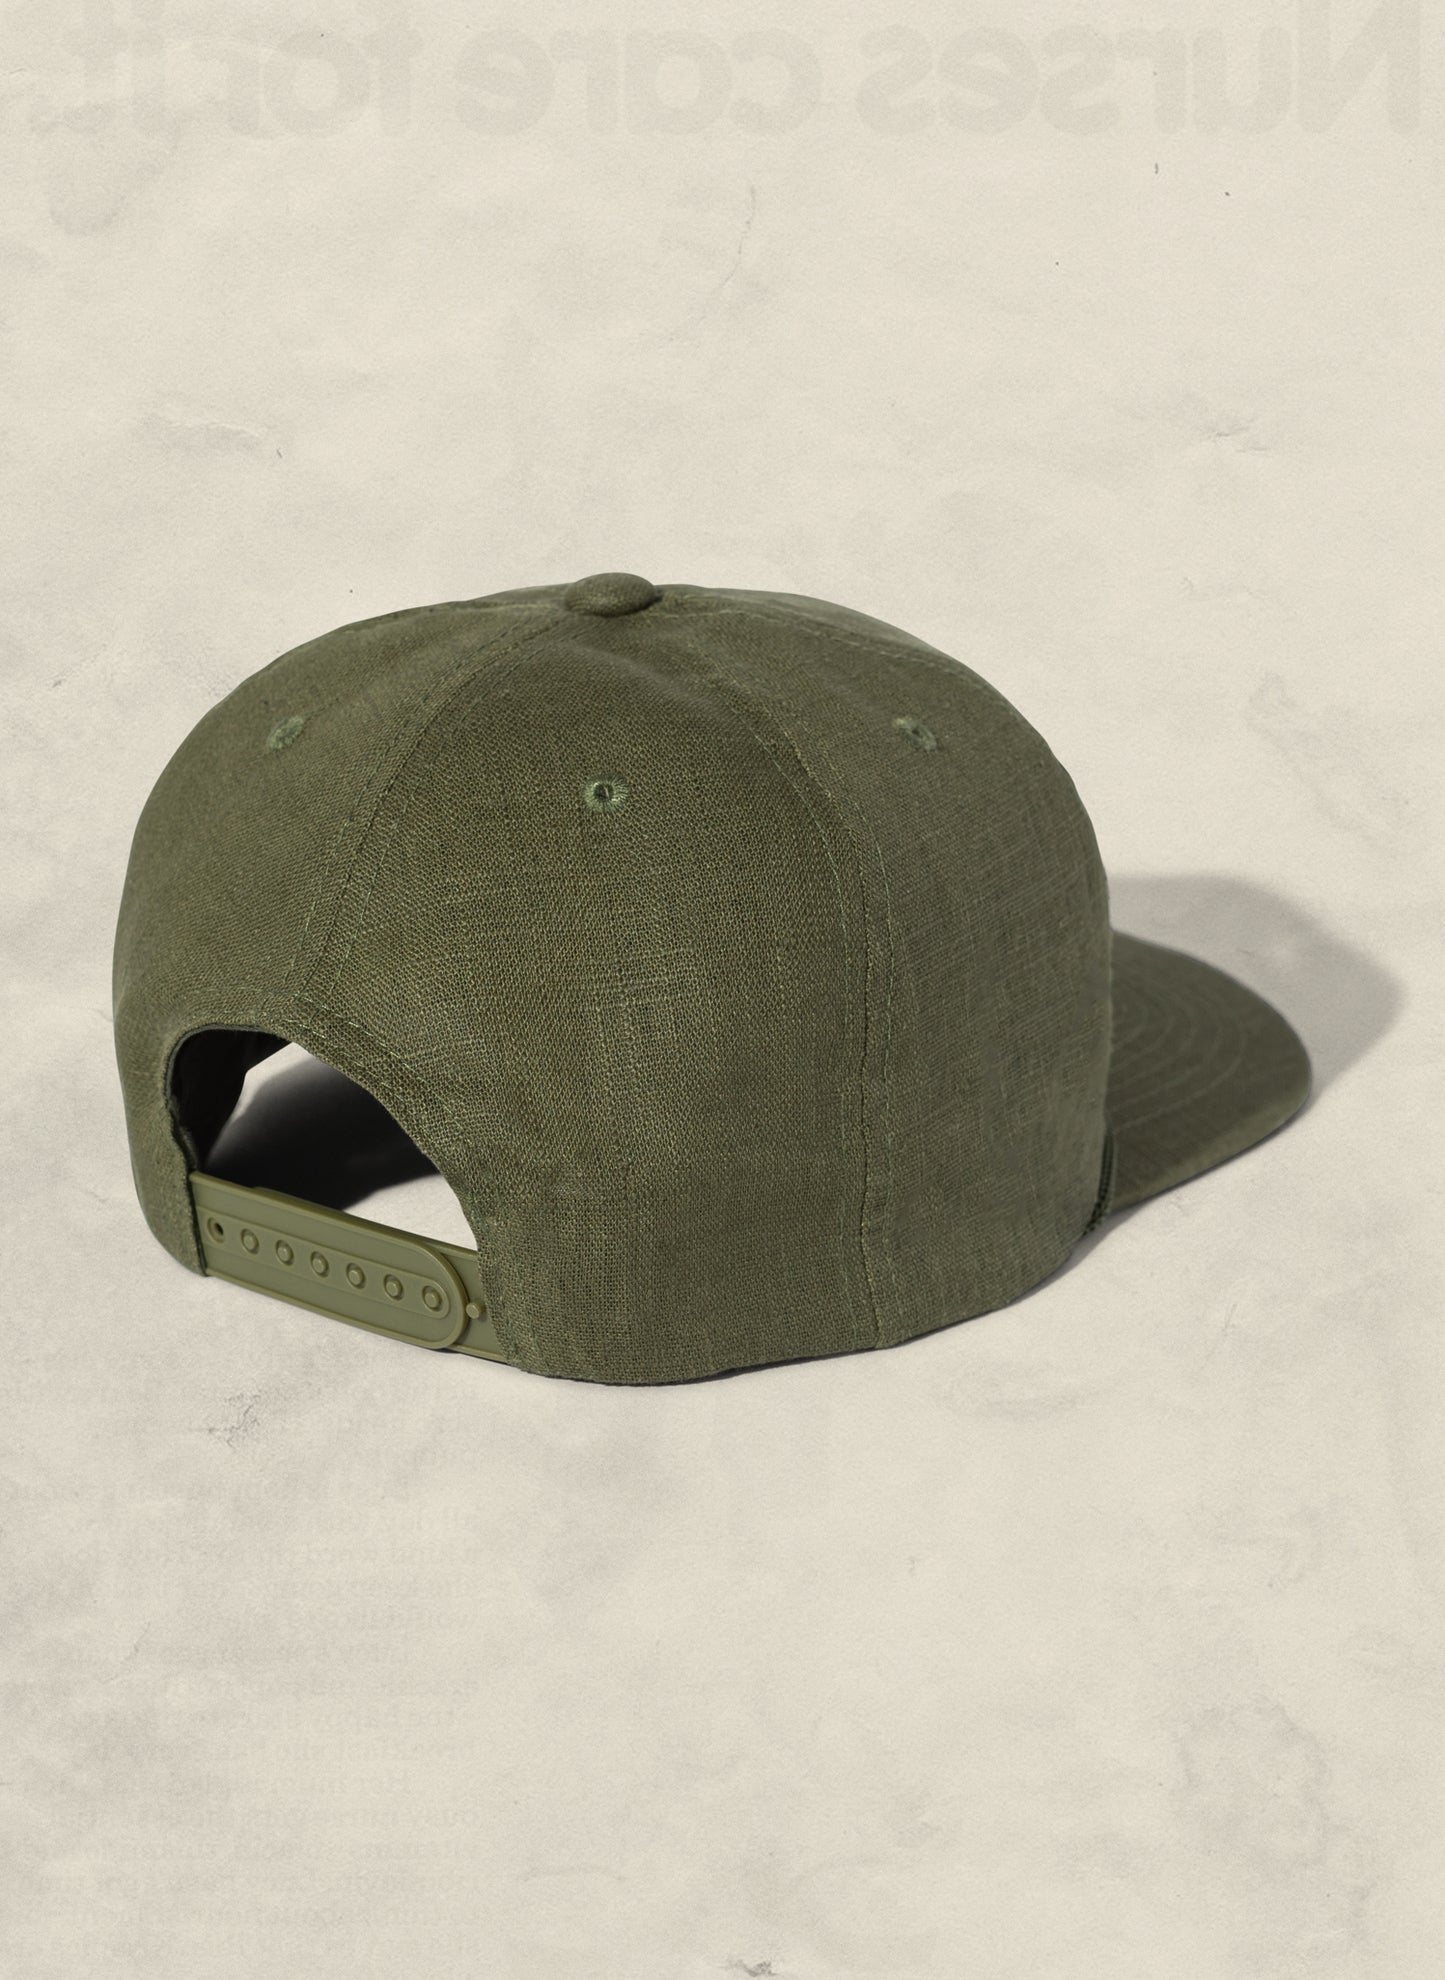 Hemp Field Trip Trucker Hat (+4 colors) – weld mfg